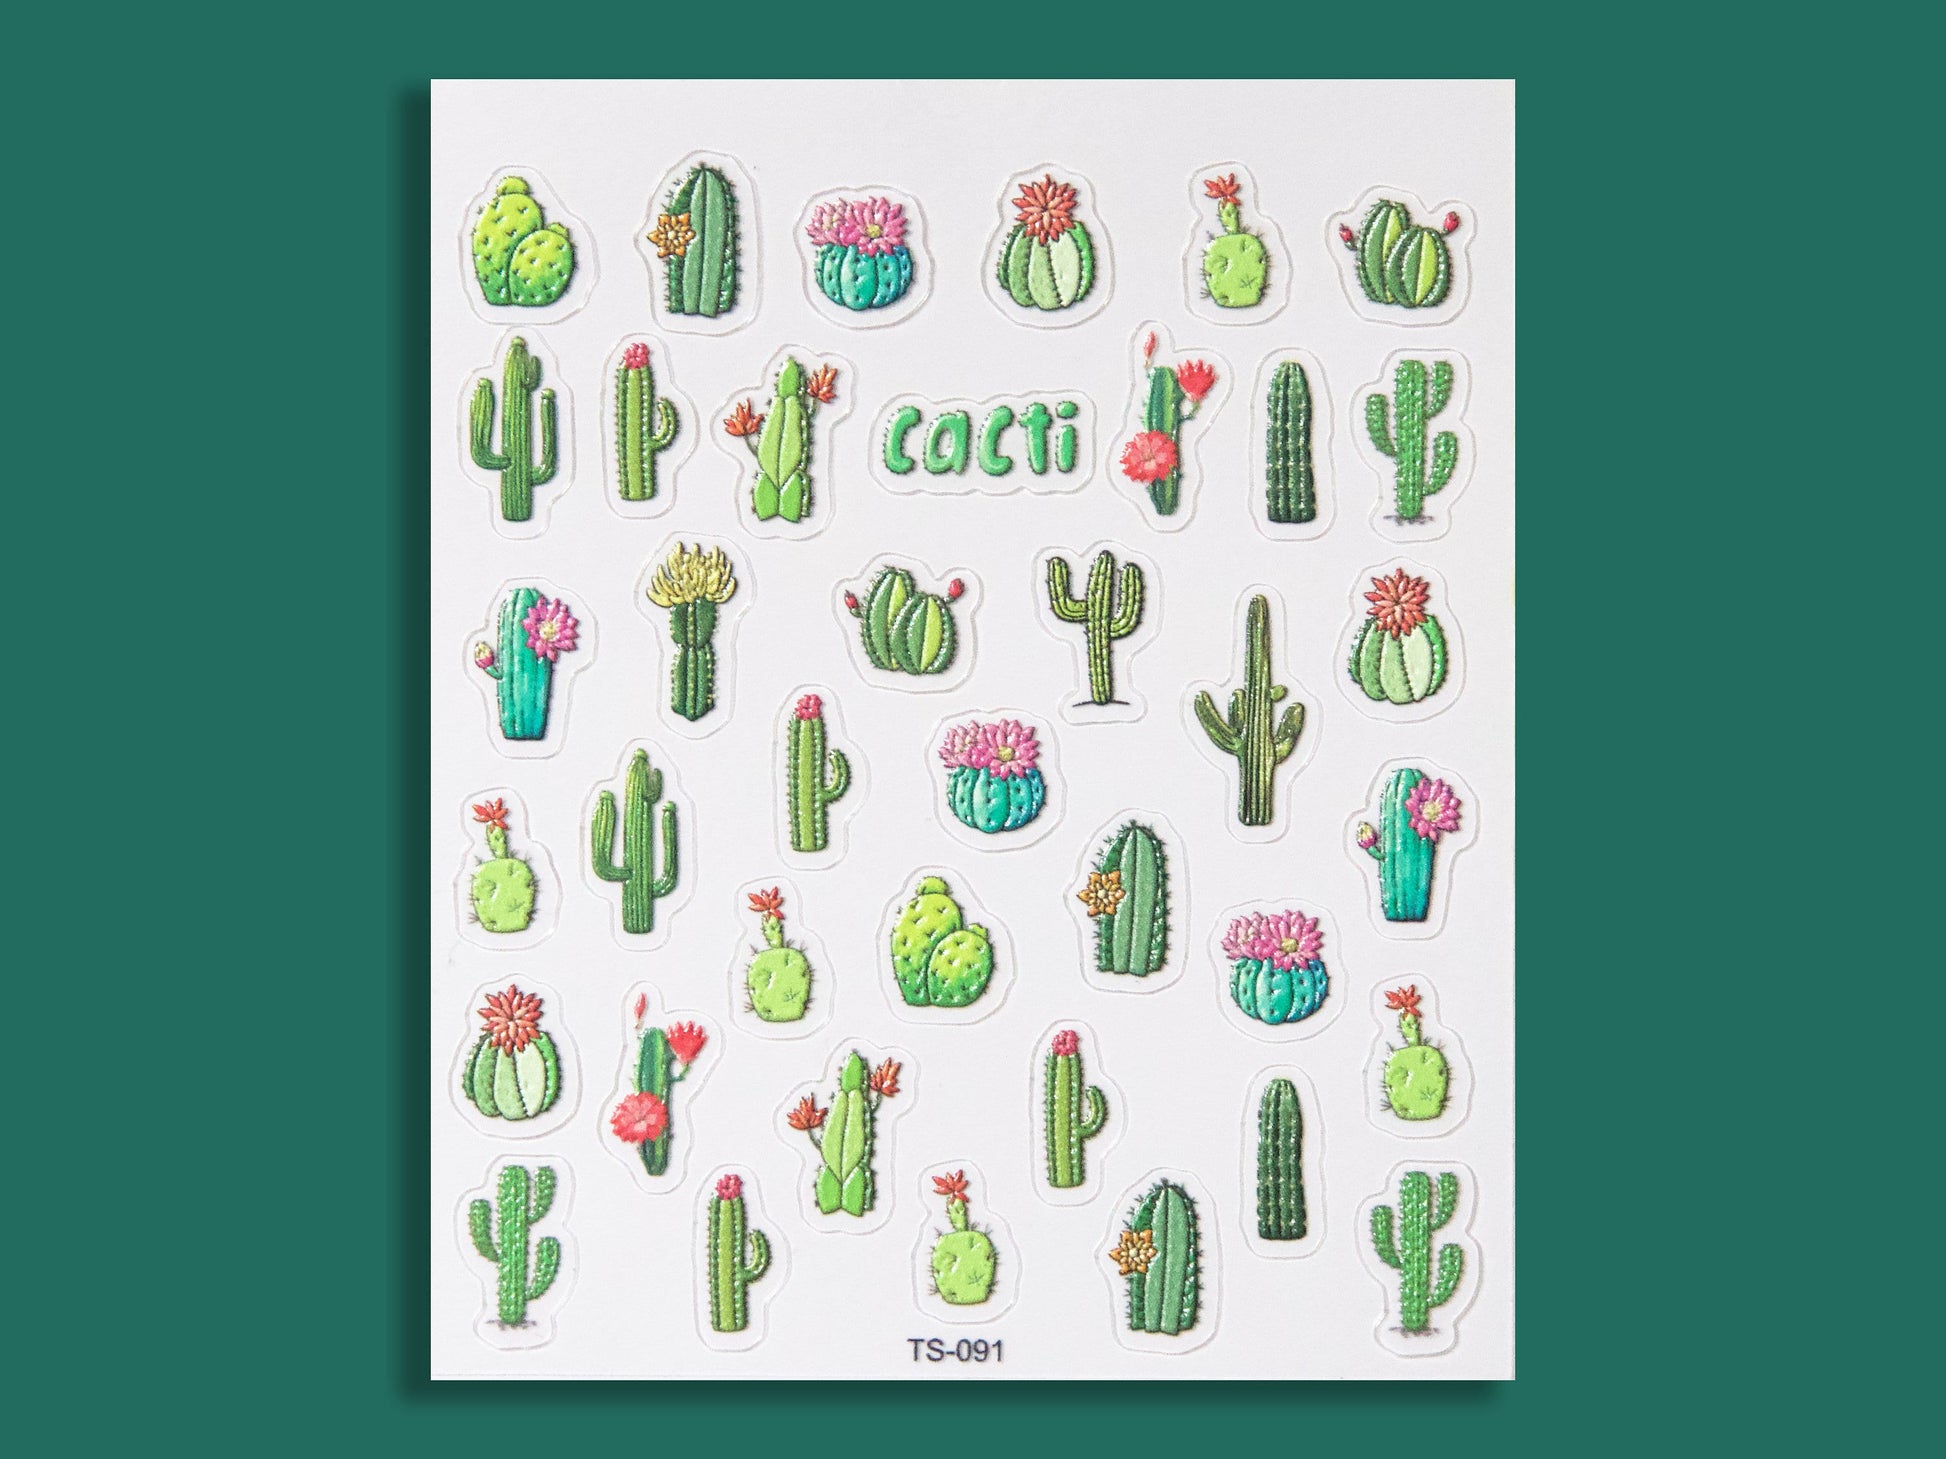 Succulent Plant Desert Cactus Nail Art Sticker/ Botany Echeveria elegans Succulents Green Plants Stickers/ Cacti Cereus Sticker for Manicure